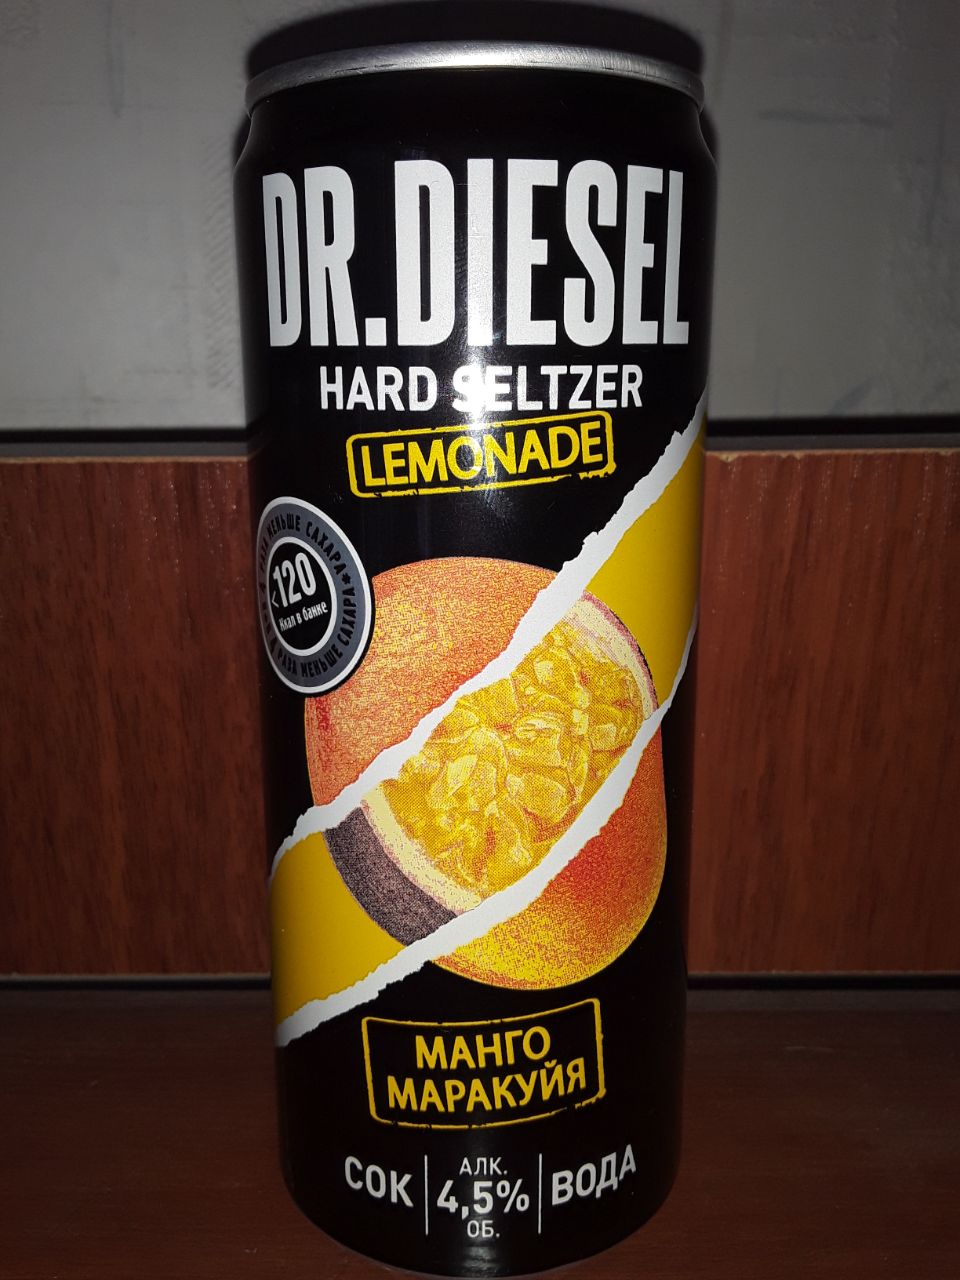 Mr diesel. Пивной напиток Dr Diesel. Пивной напиток Dr. Diesel hard Seltzer. «Доктор дизель лимонад манго маракуйя». Dr Diesel манго маракуйя.